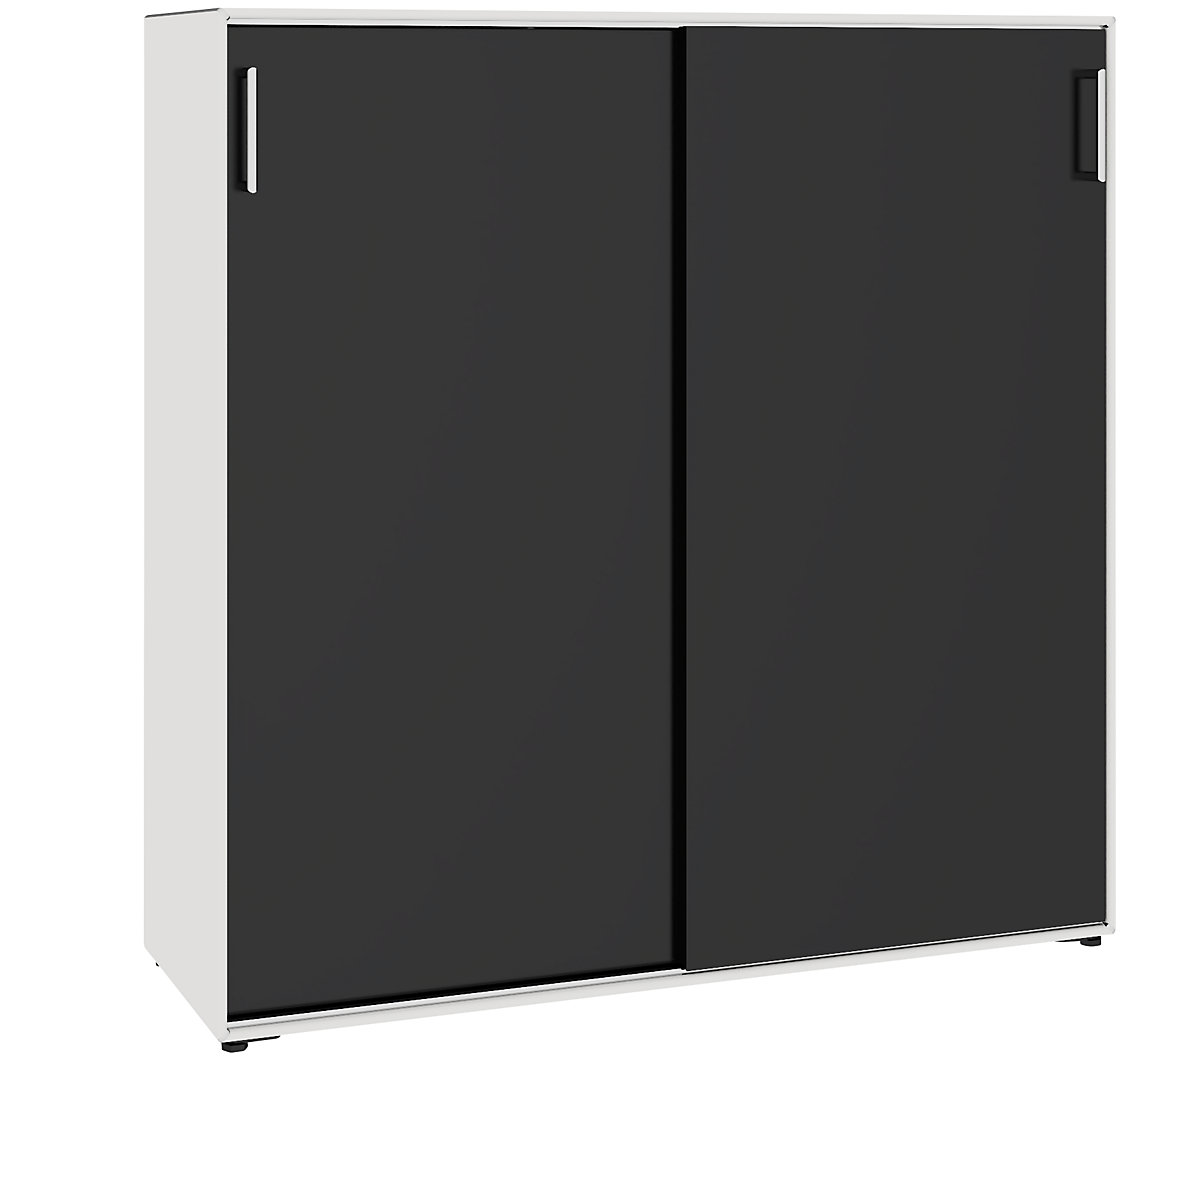 Omara z drsnimi vrati – mauser, 6 predelkov, širina 1155 mm, signalno bele / intenzivno črne barve-7